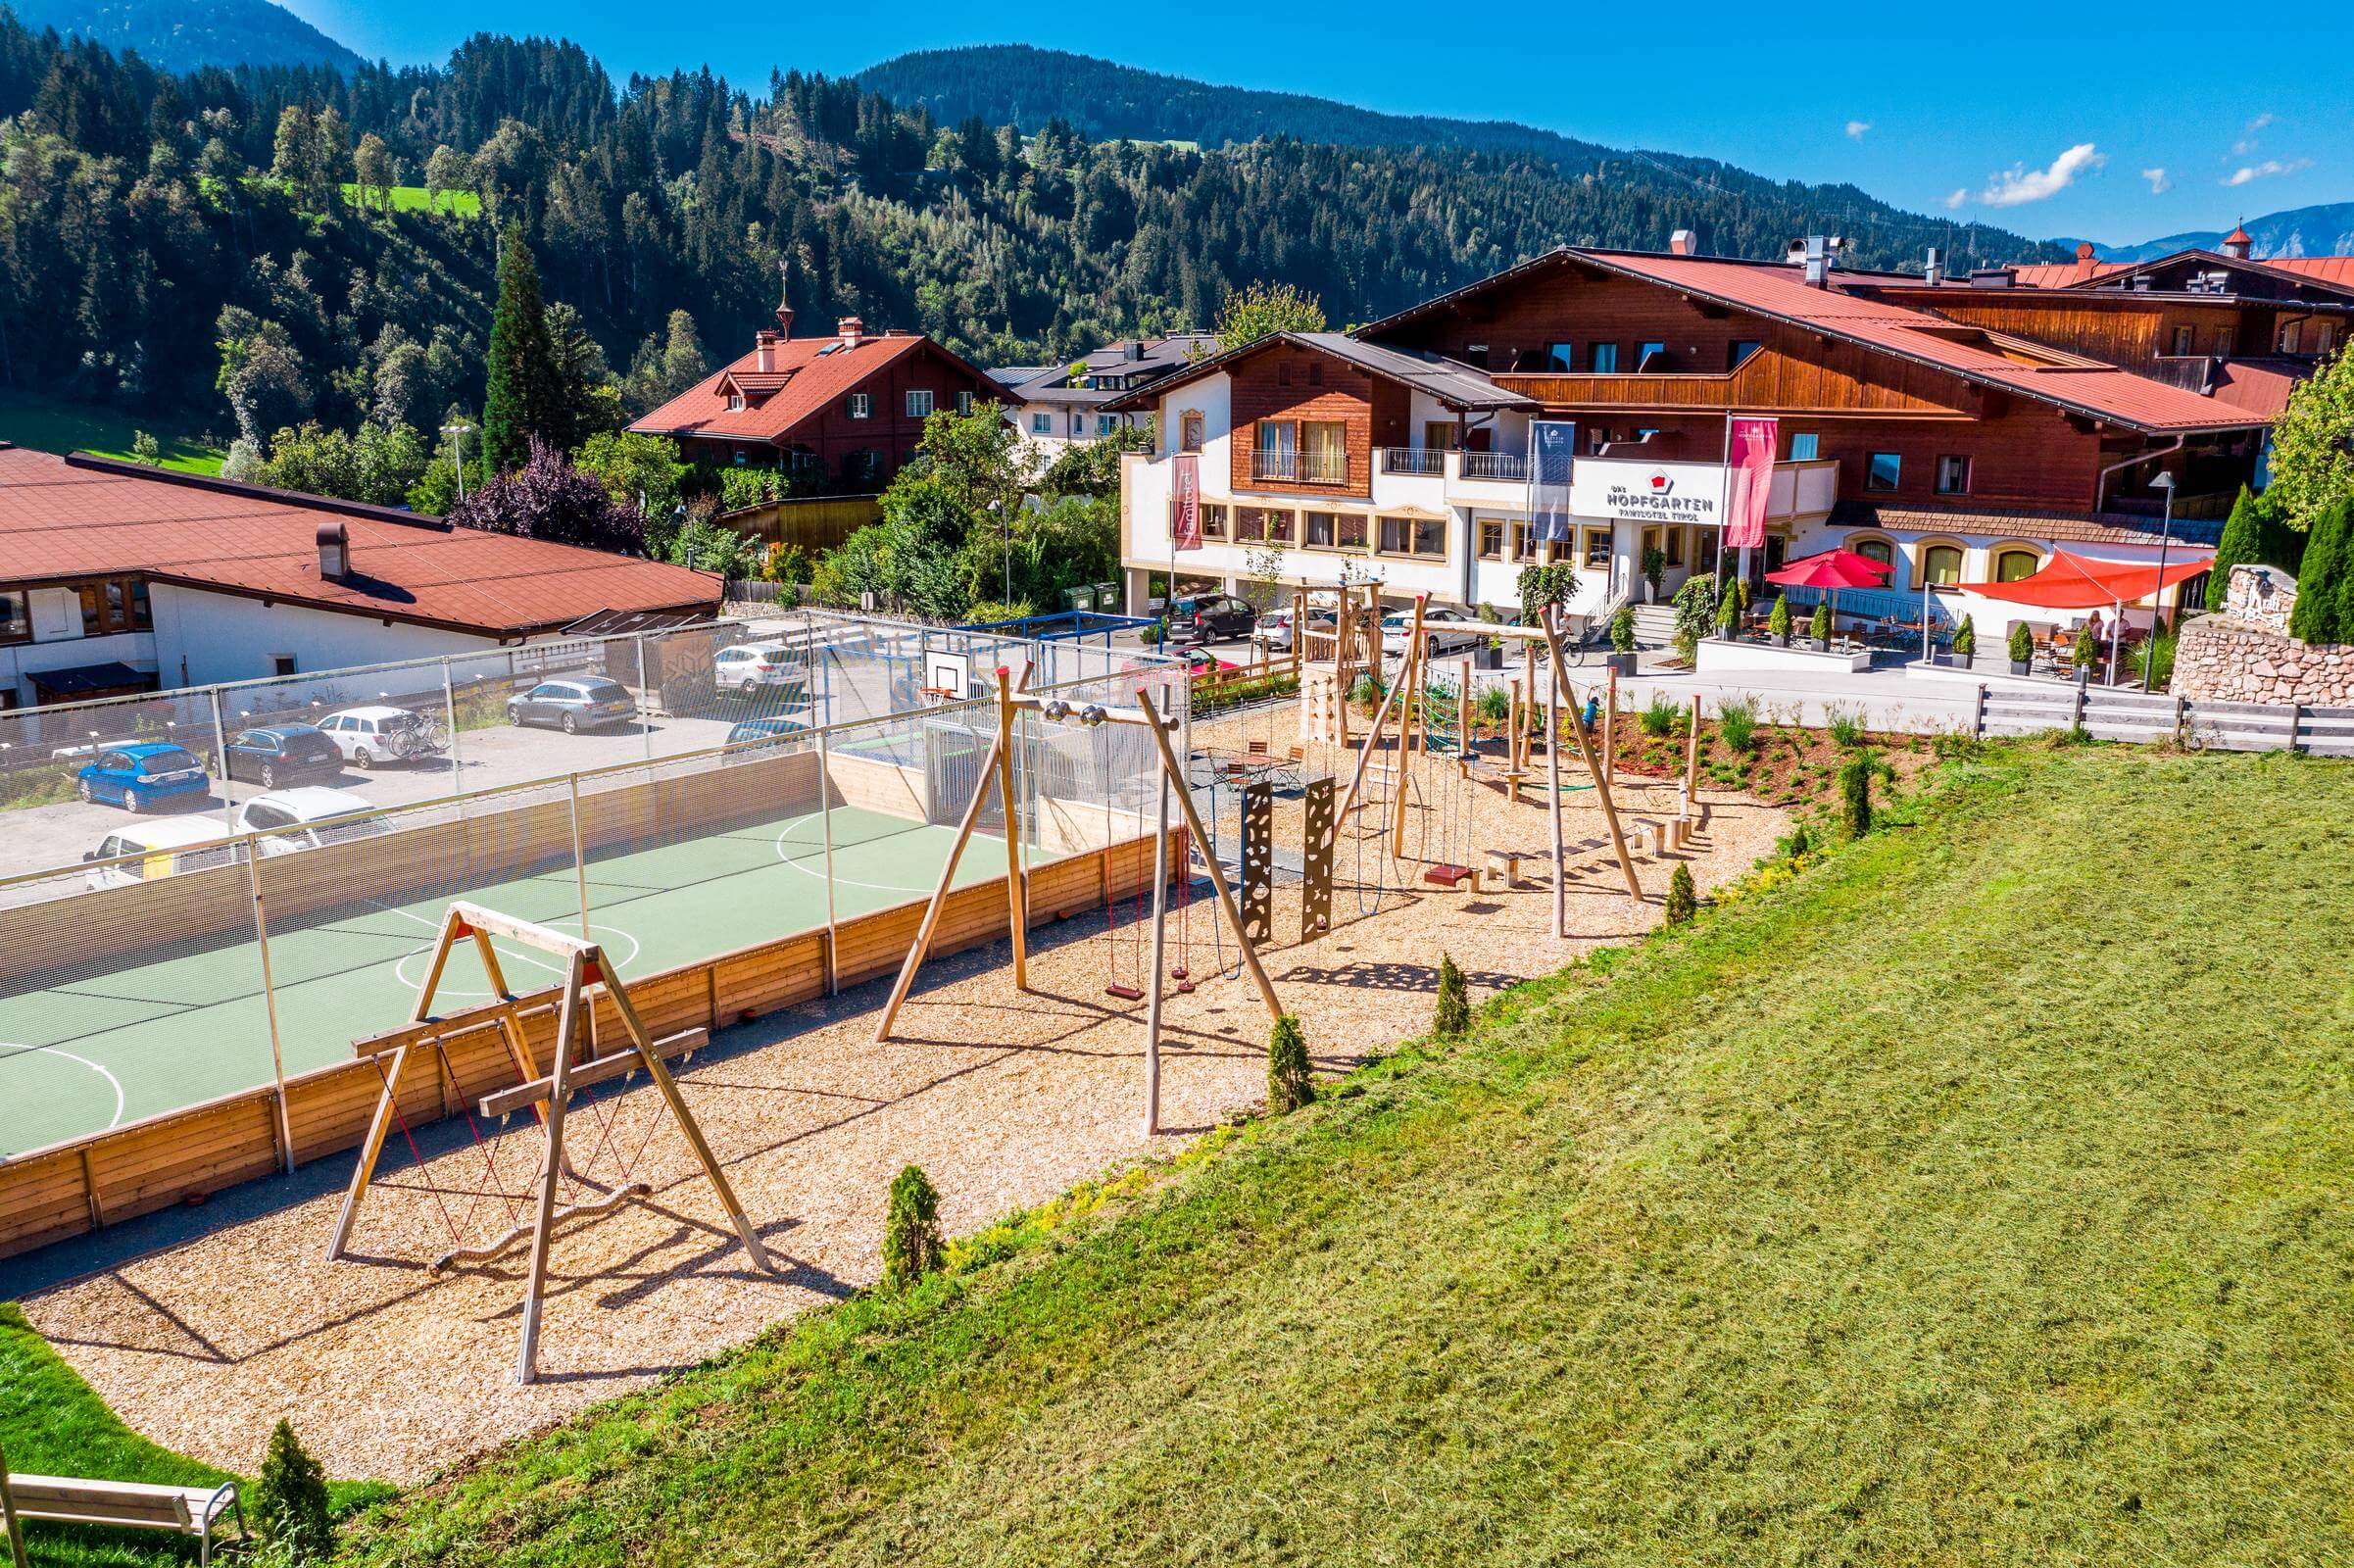 Hotelfotografie in Bayern - Bayrischzell für Pletzer Resorts von Fotograf aus Kärnten_150